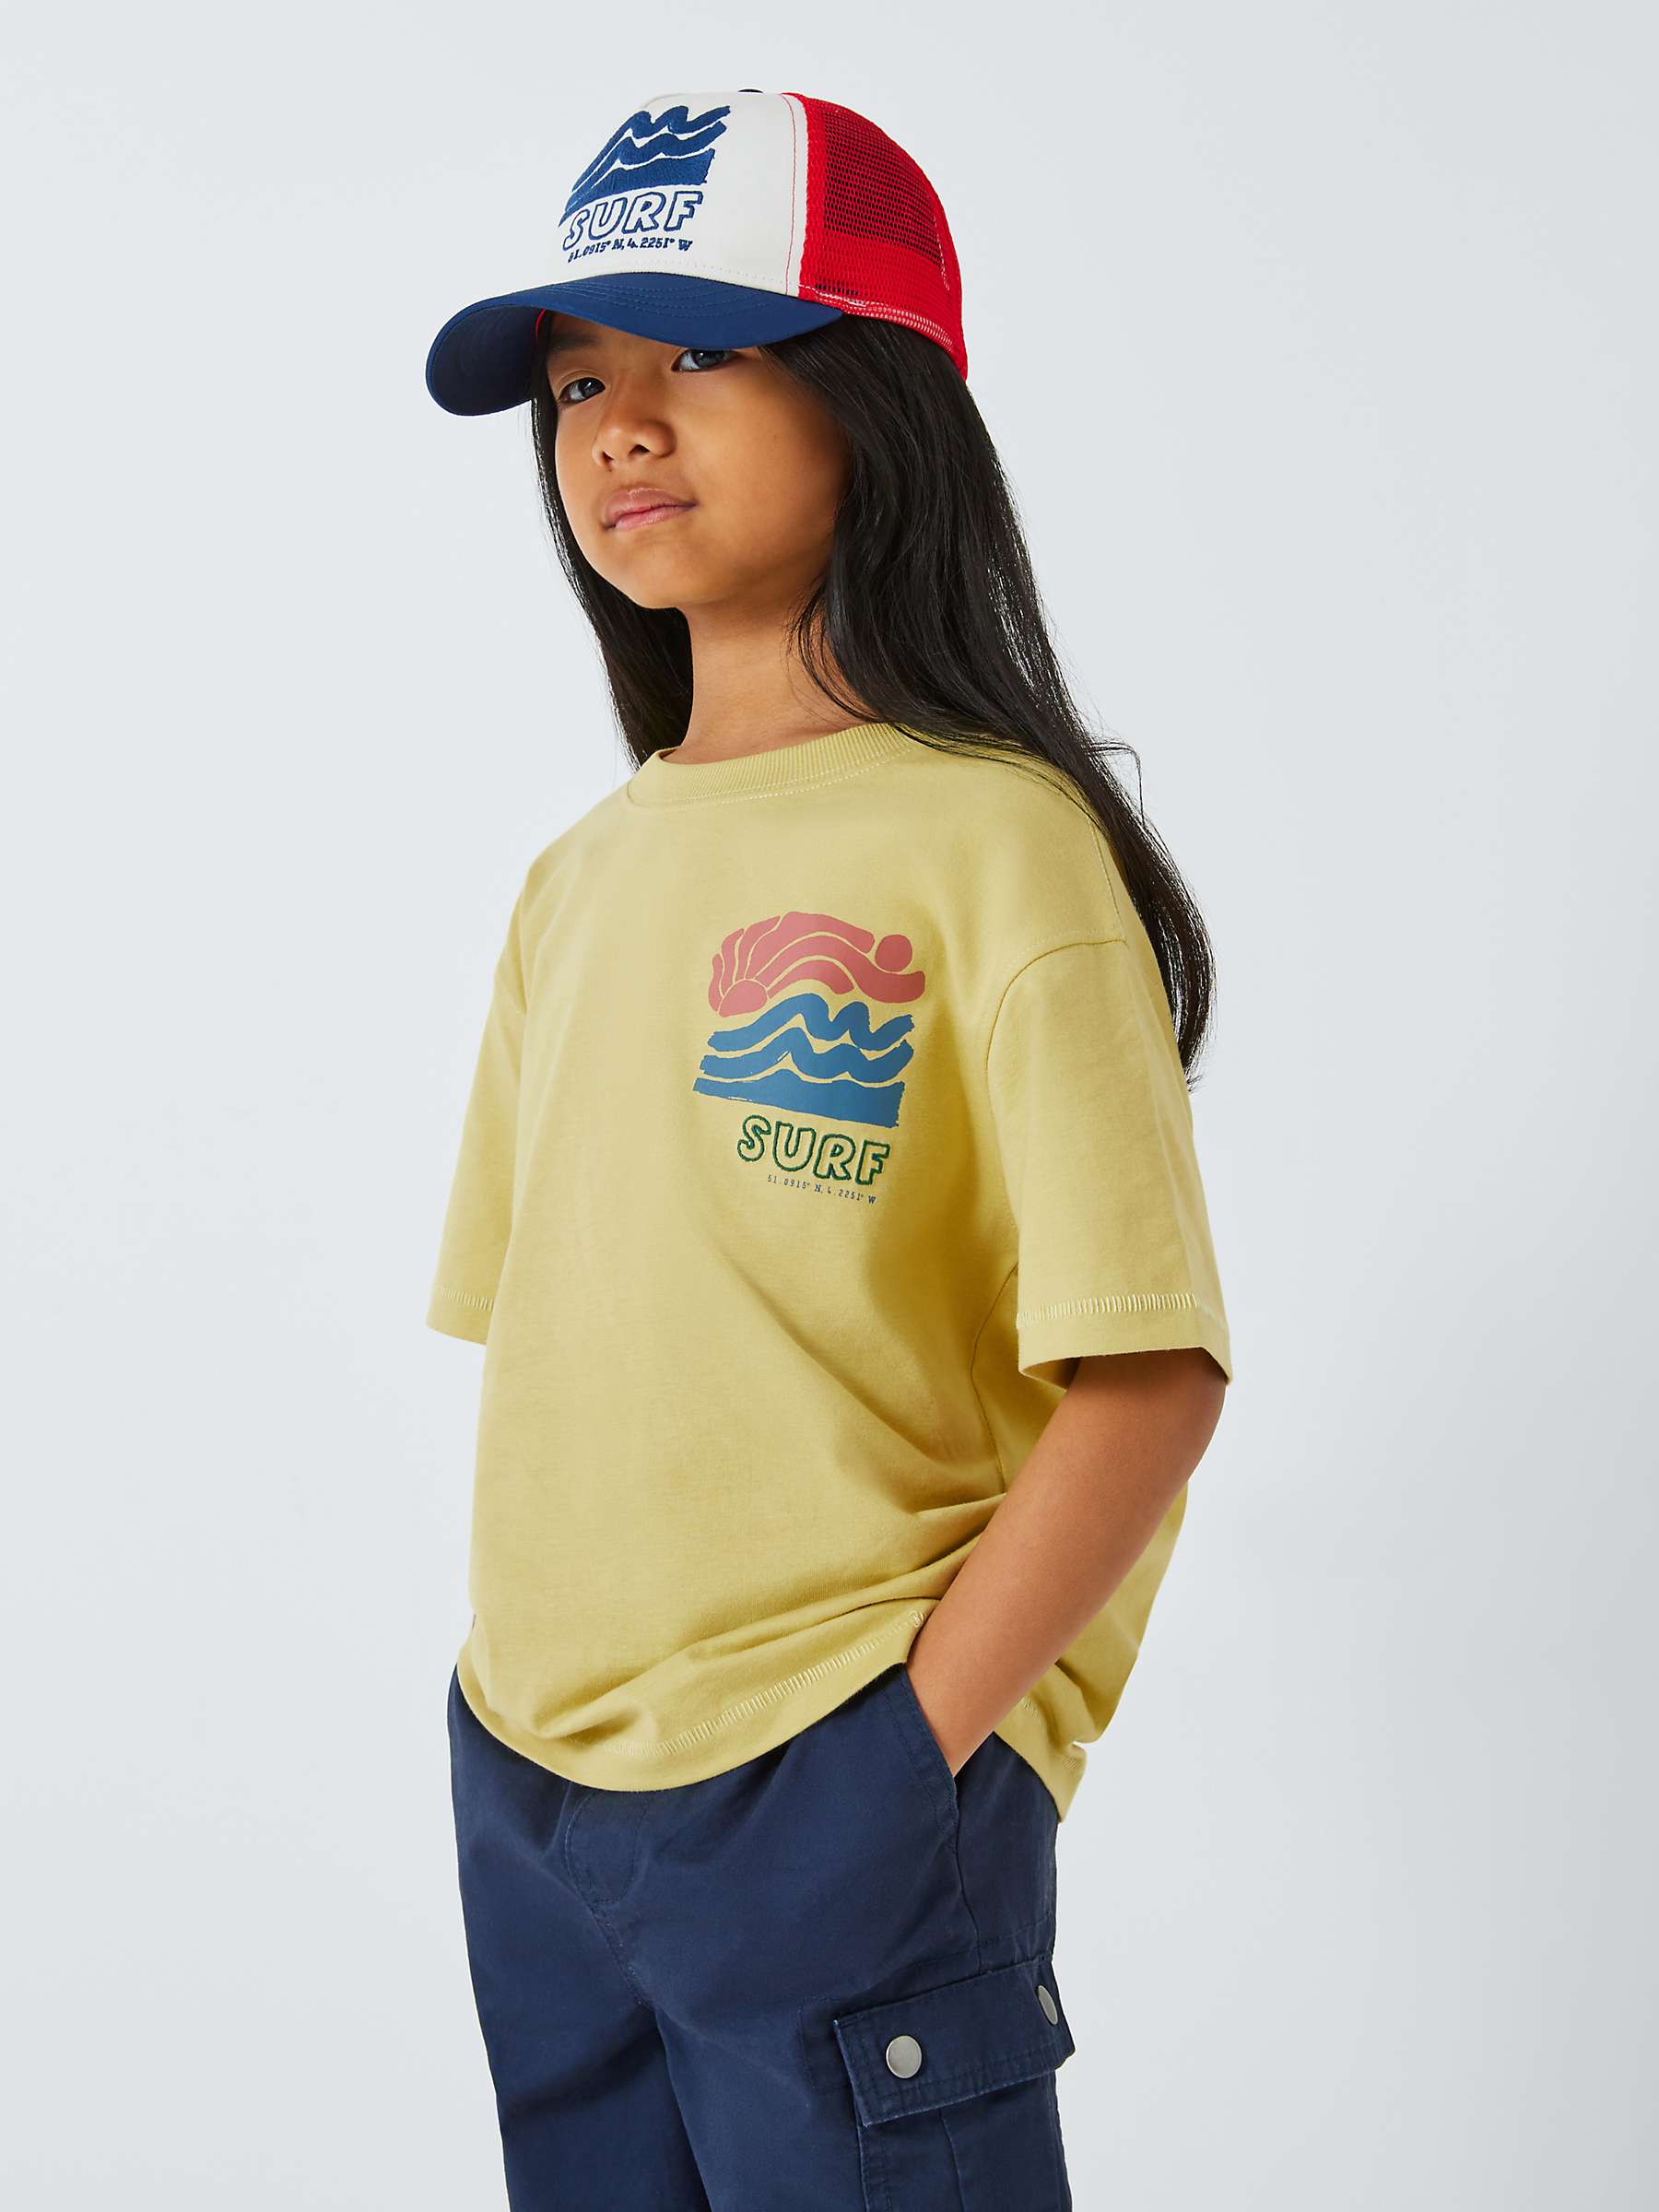 Buy John Lewis Kids' Surf Graphic T-Shirt, Yellow Online at johnlewis.com